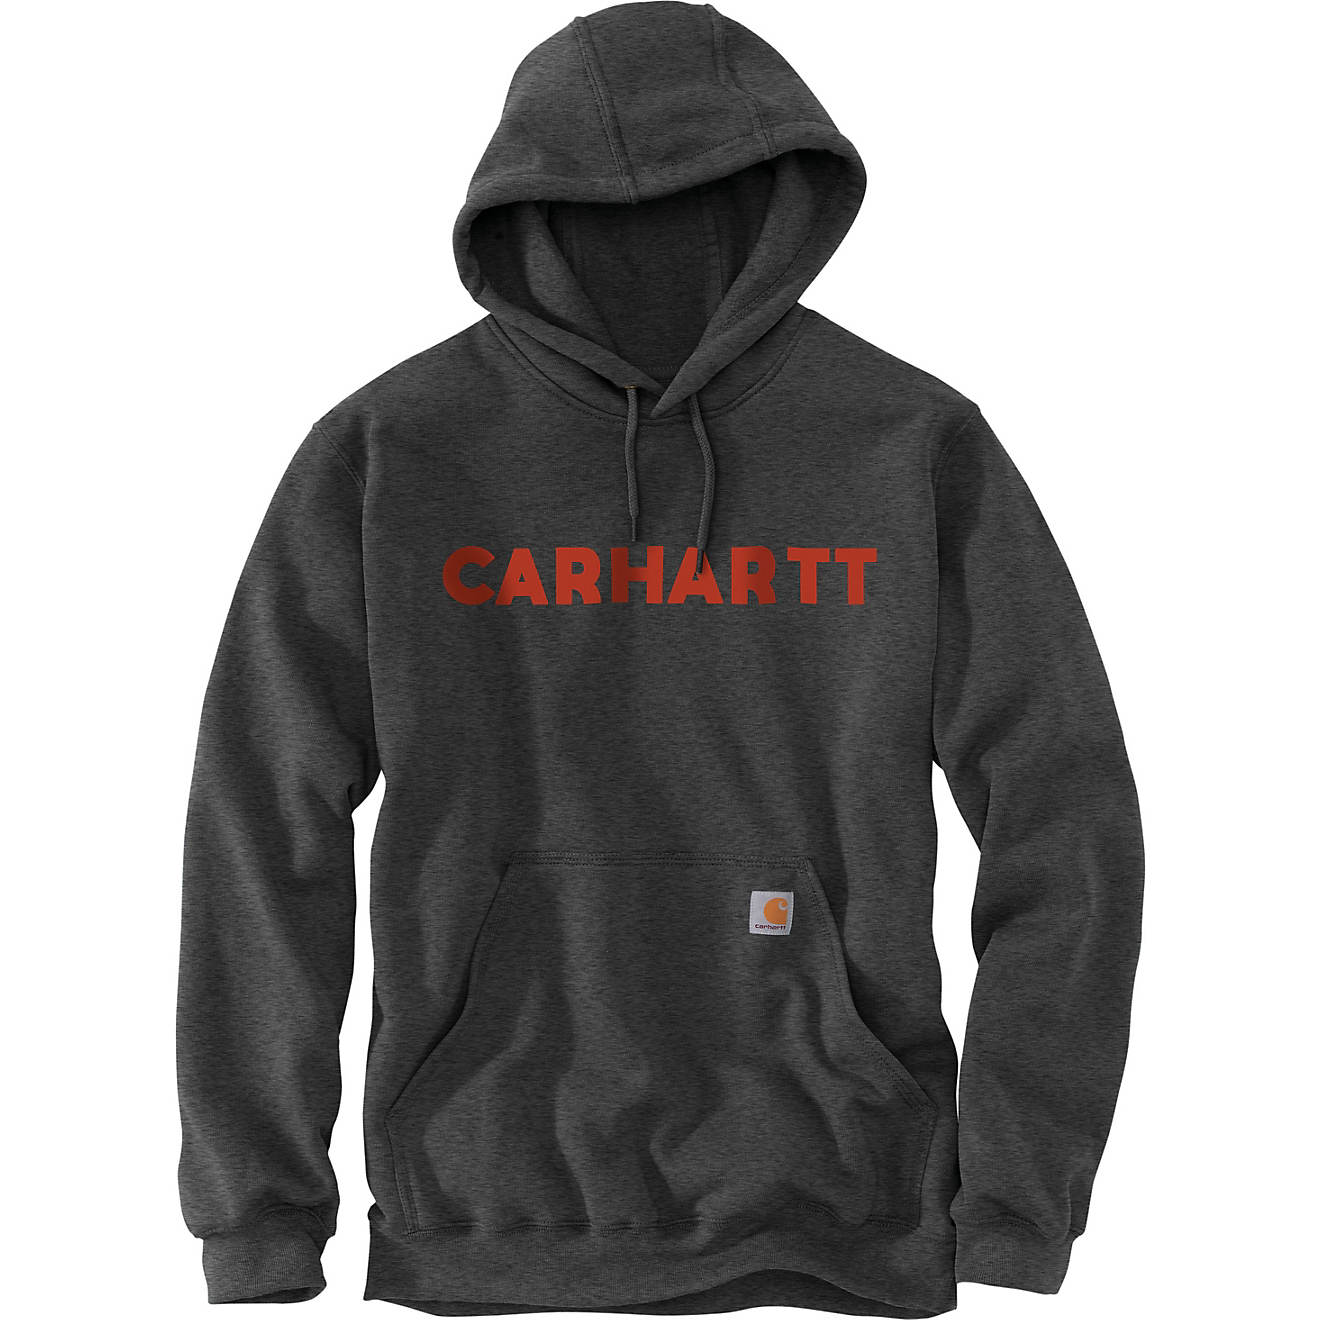 Carhartt Men's Camo Graphic Hoodie Sweatshirt                                                                                    - view number 1